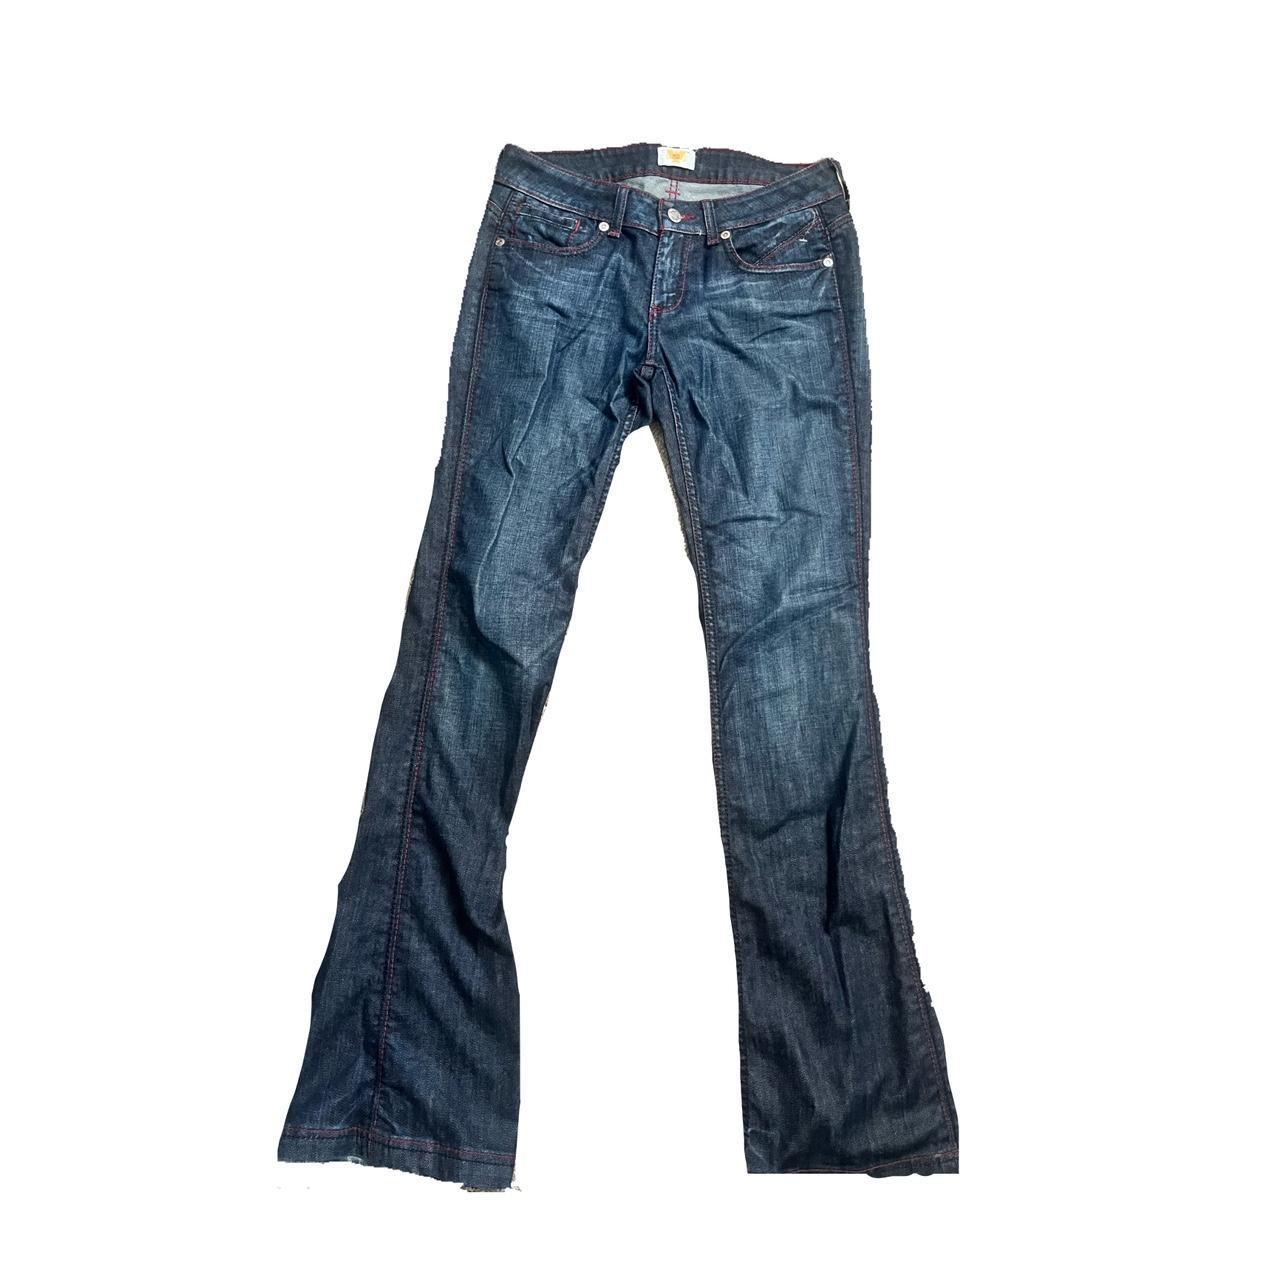 Antik Denim Y2k blue Jeans with red lining Flared!... - Depop